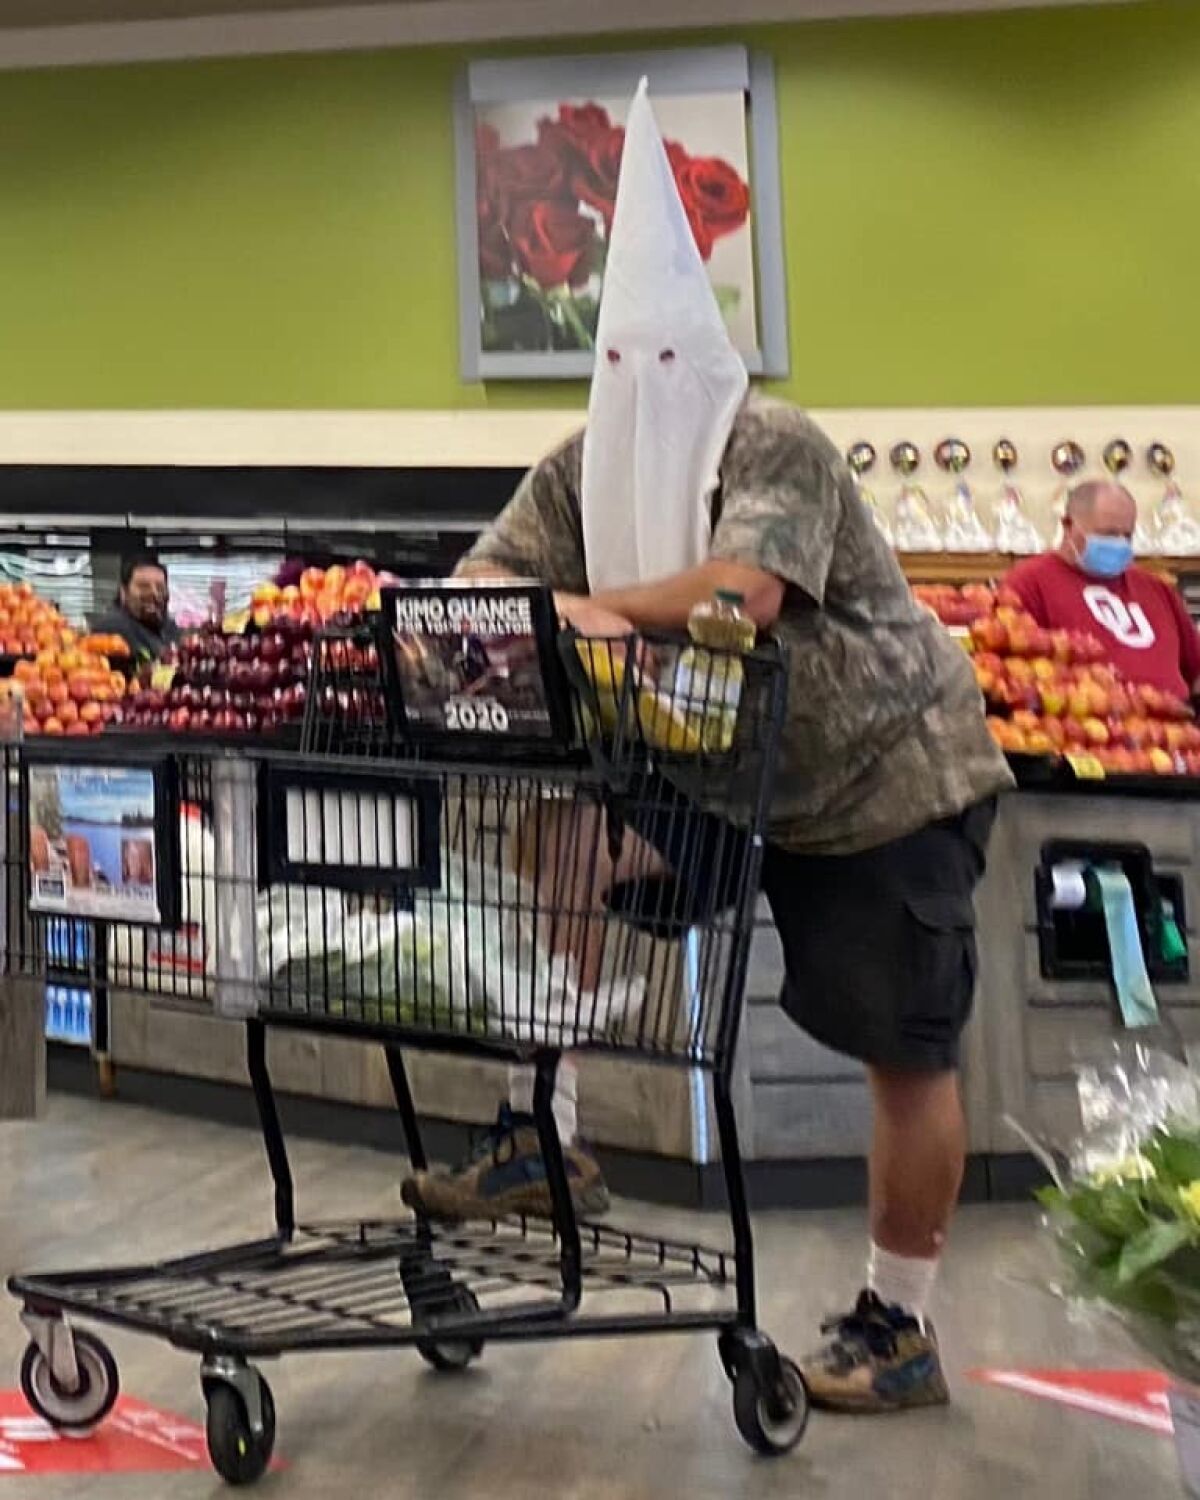 Man wearing a KKK hood in grocery store